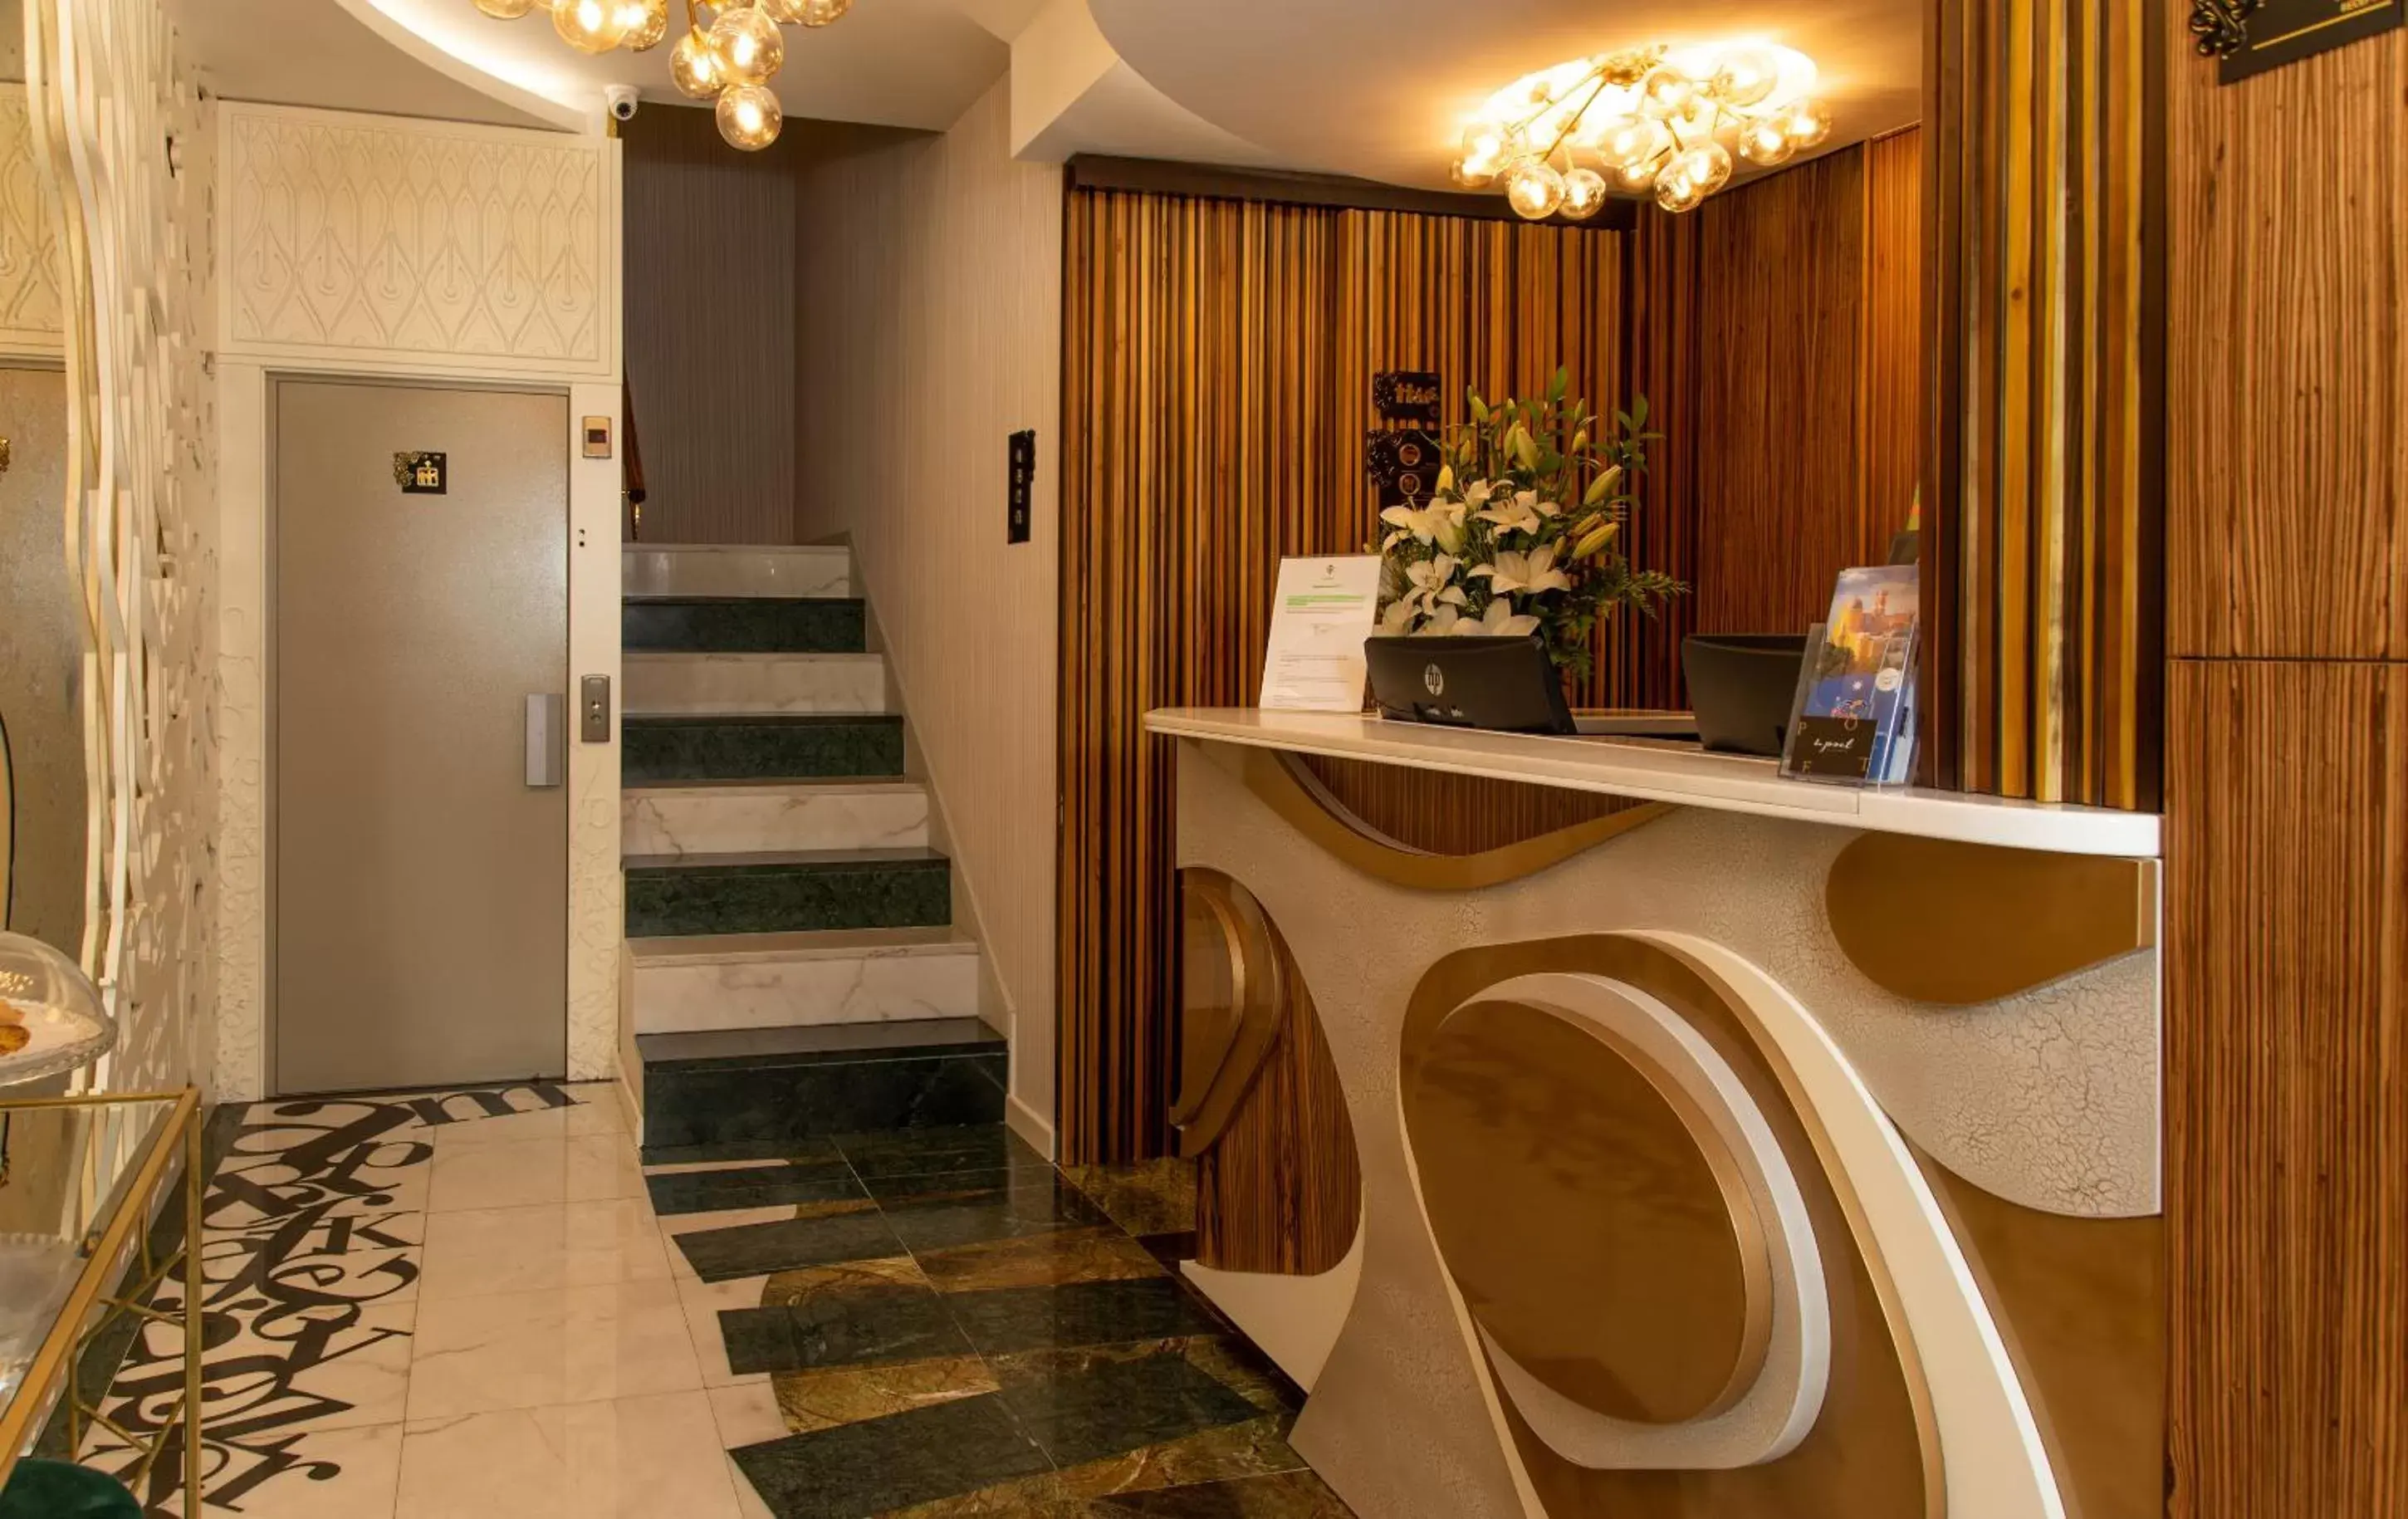 Lobby or reception, Lobby/Reception in Be Poet Baixa Hotel